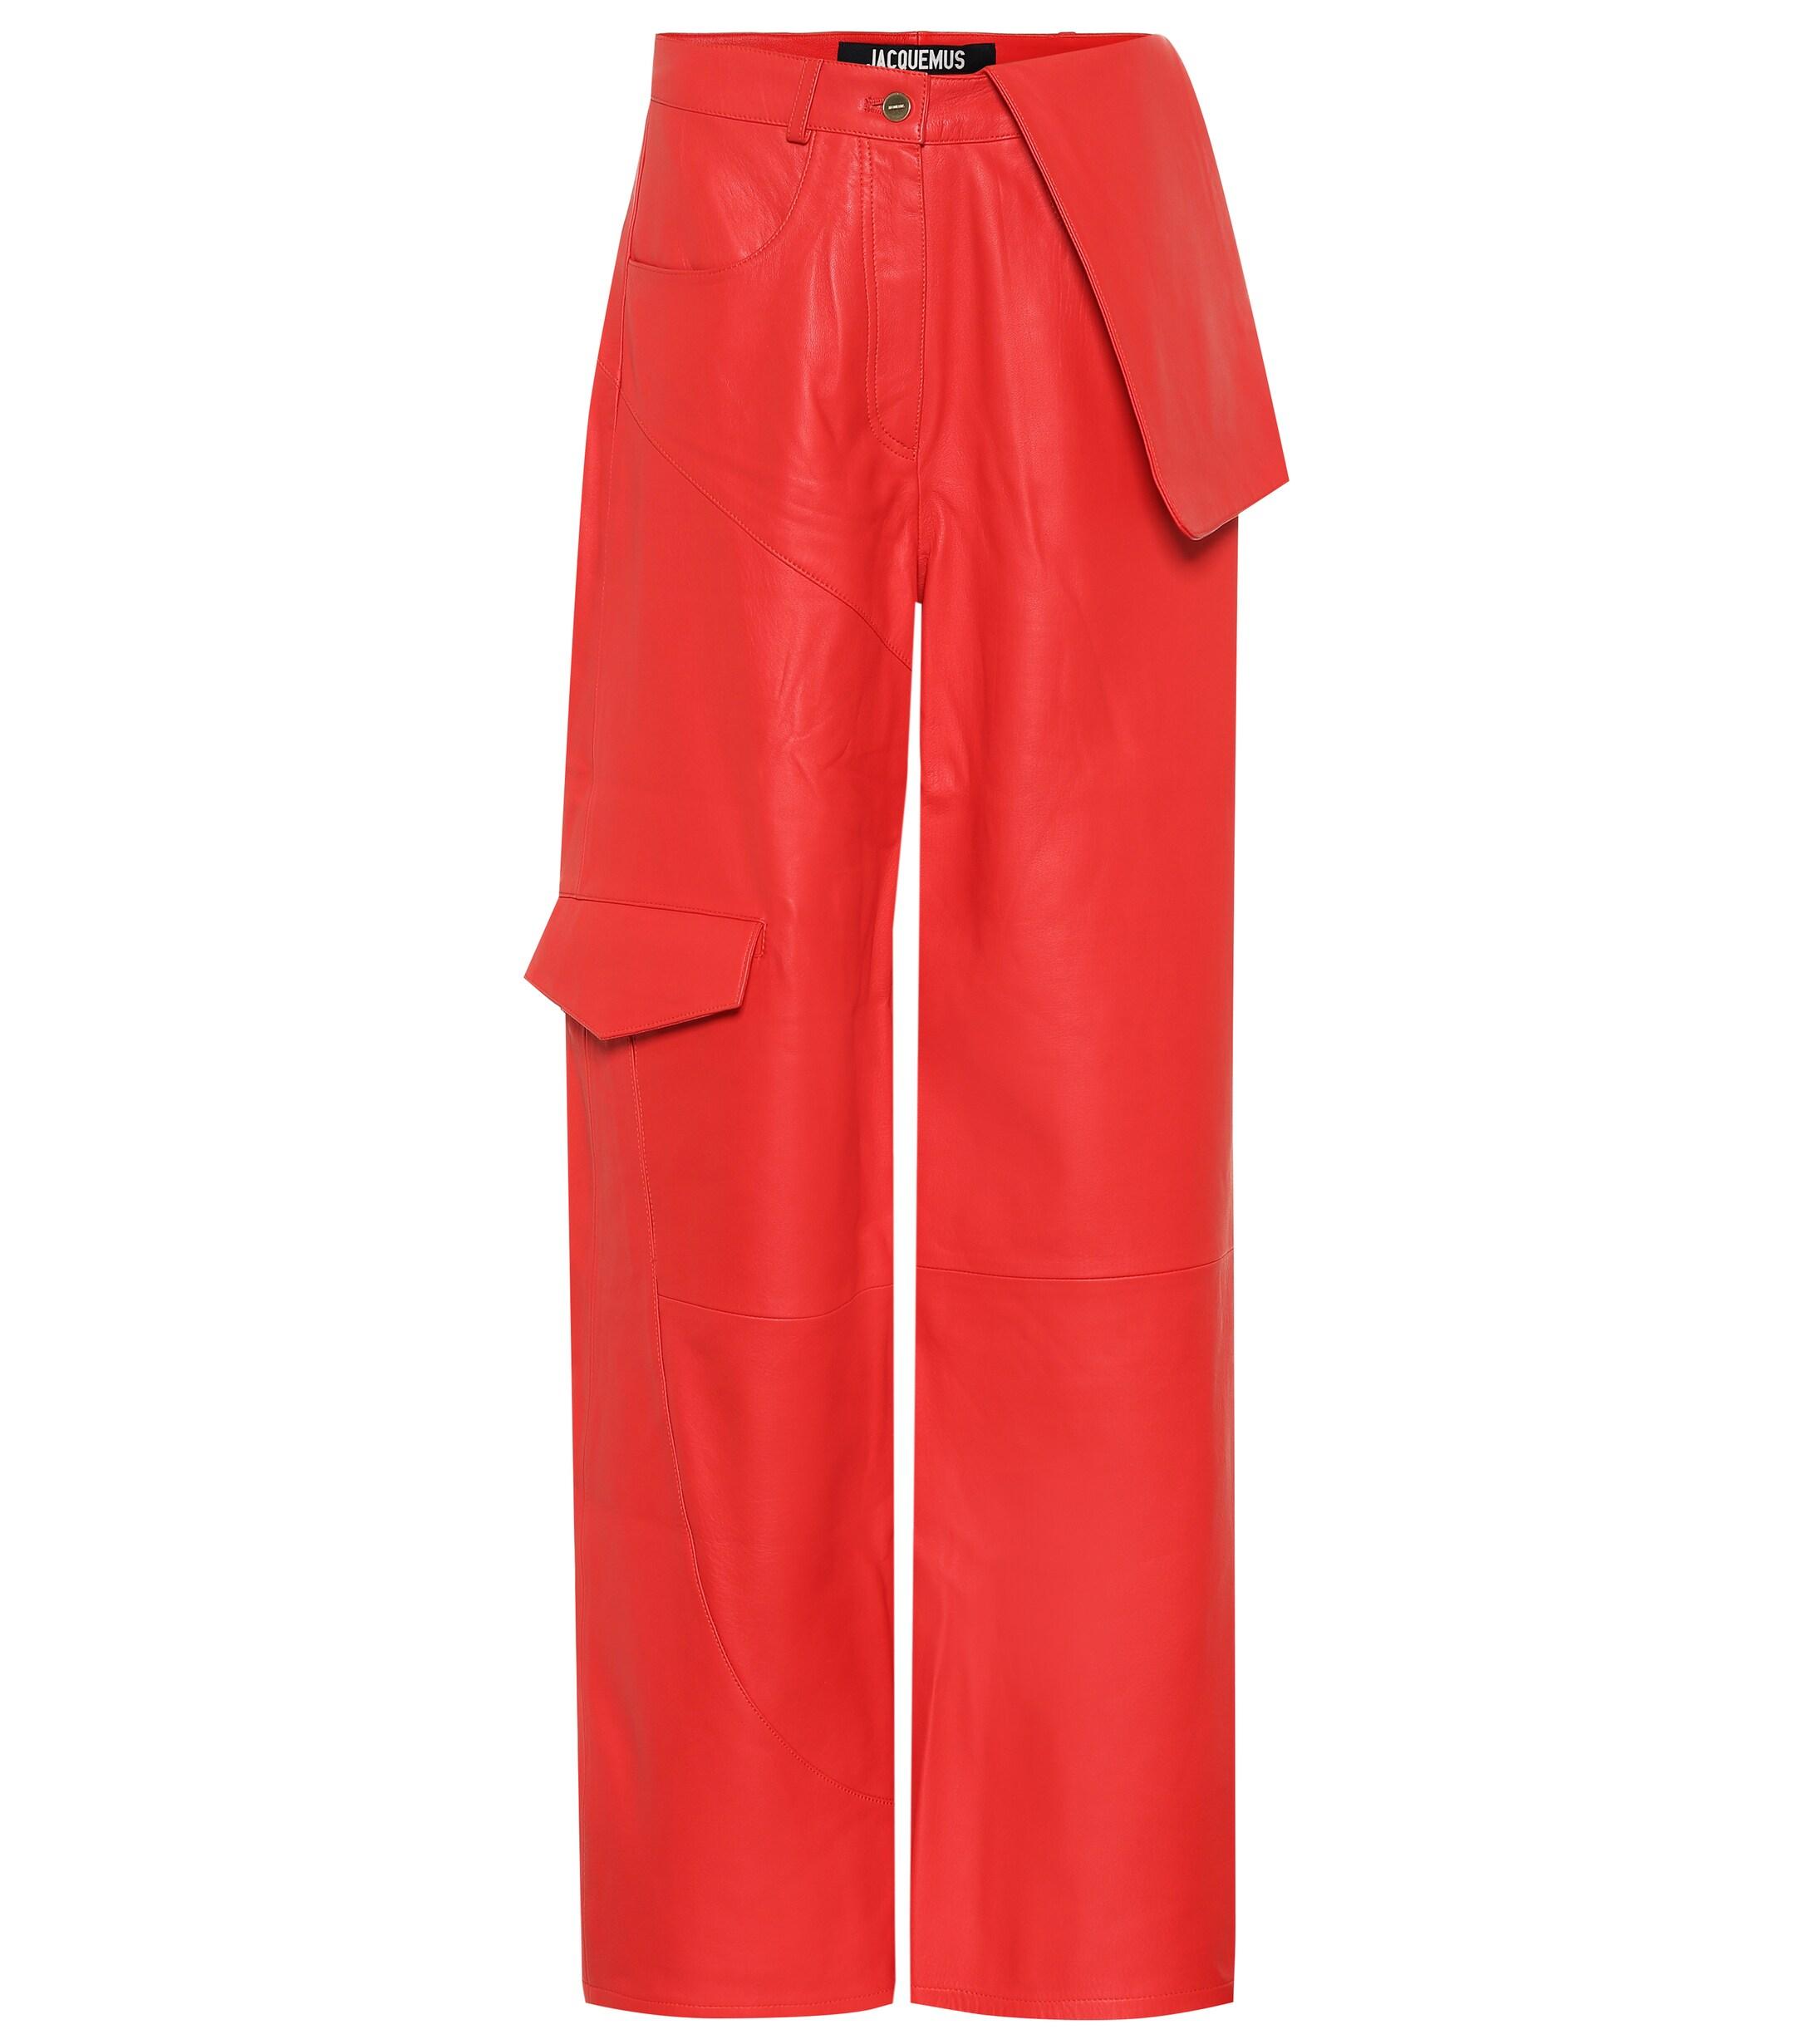 Jacquemus Le Pantalon De Nîmes Leather Pants in Red - Save 15% - Lyst